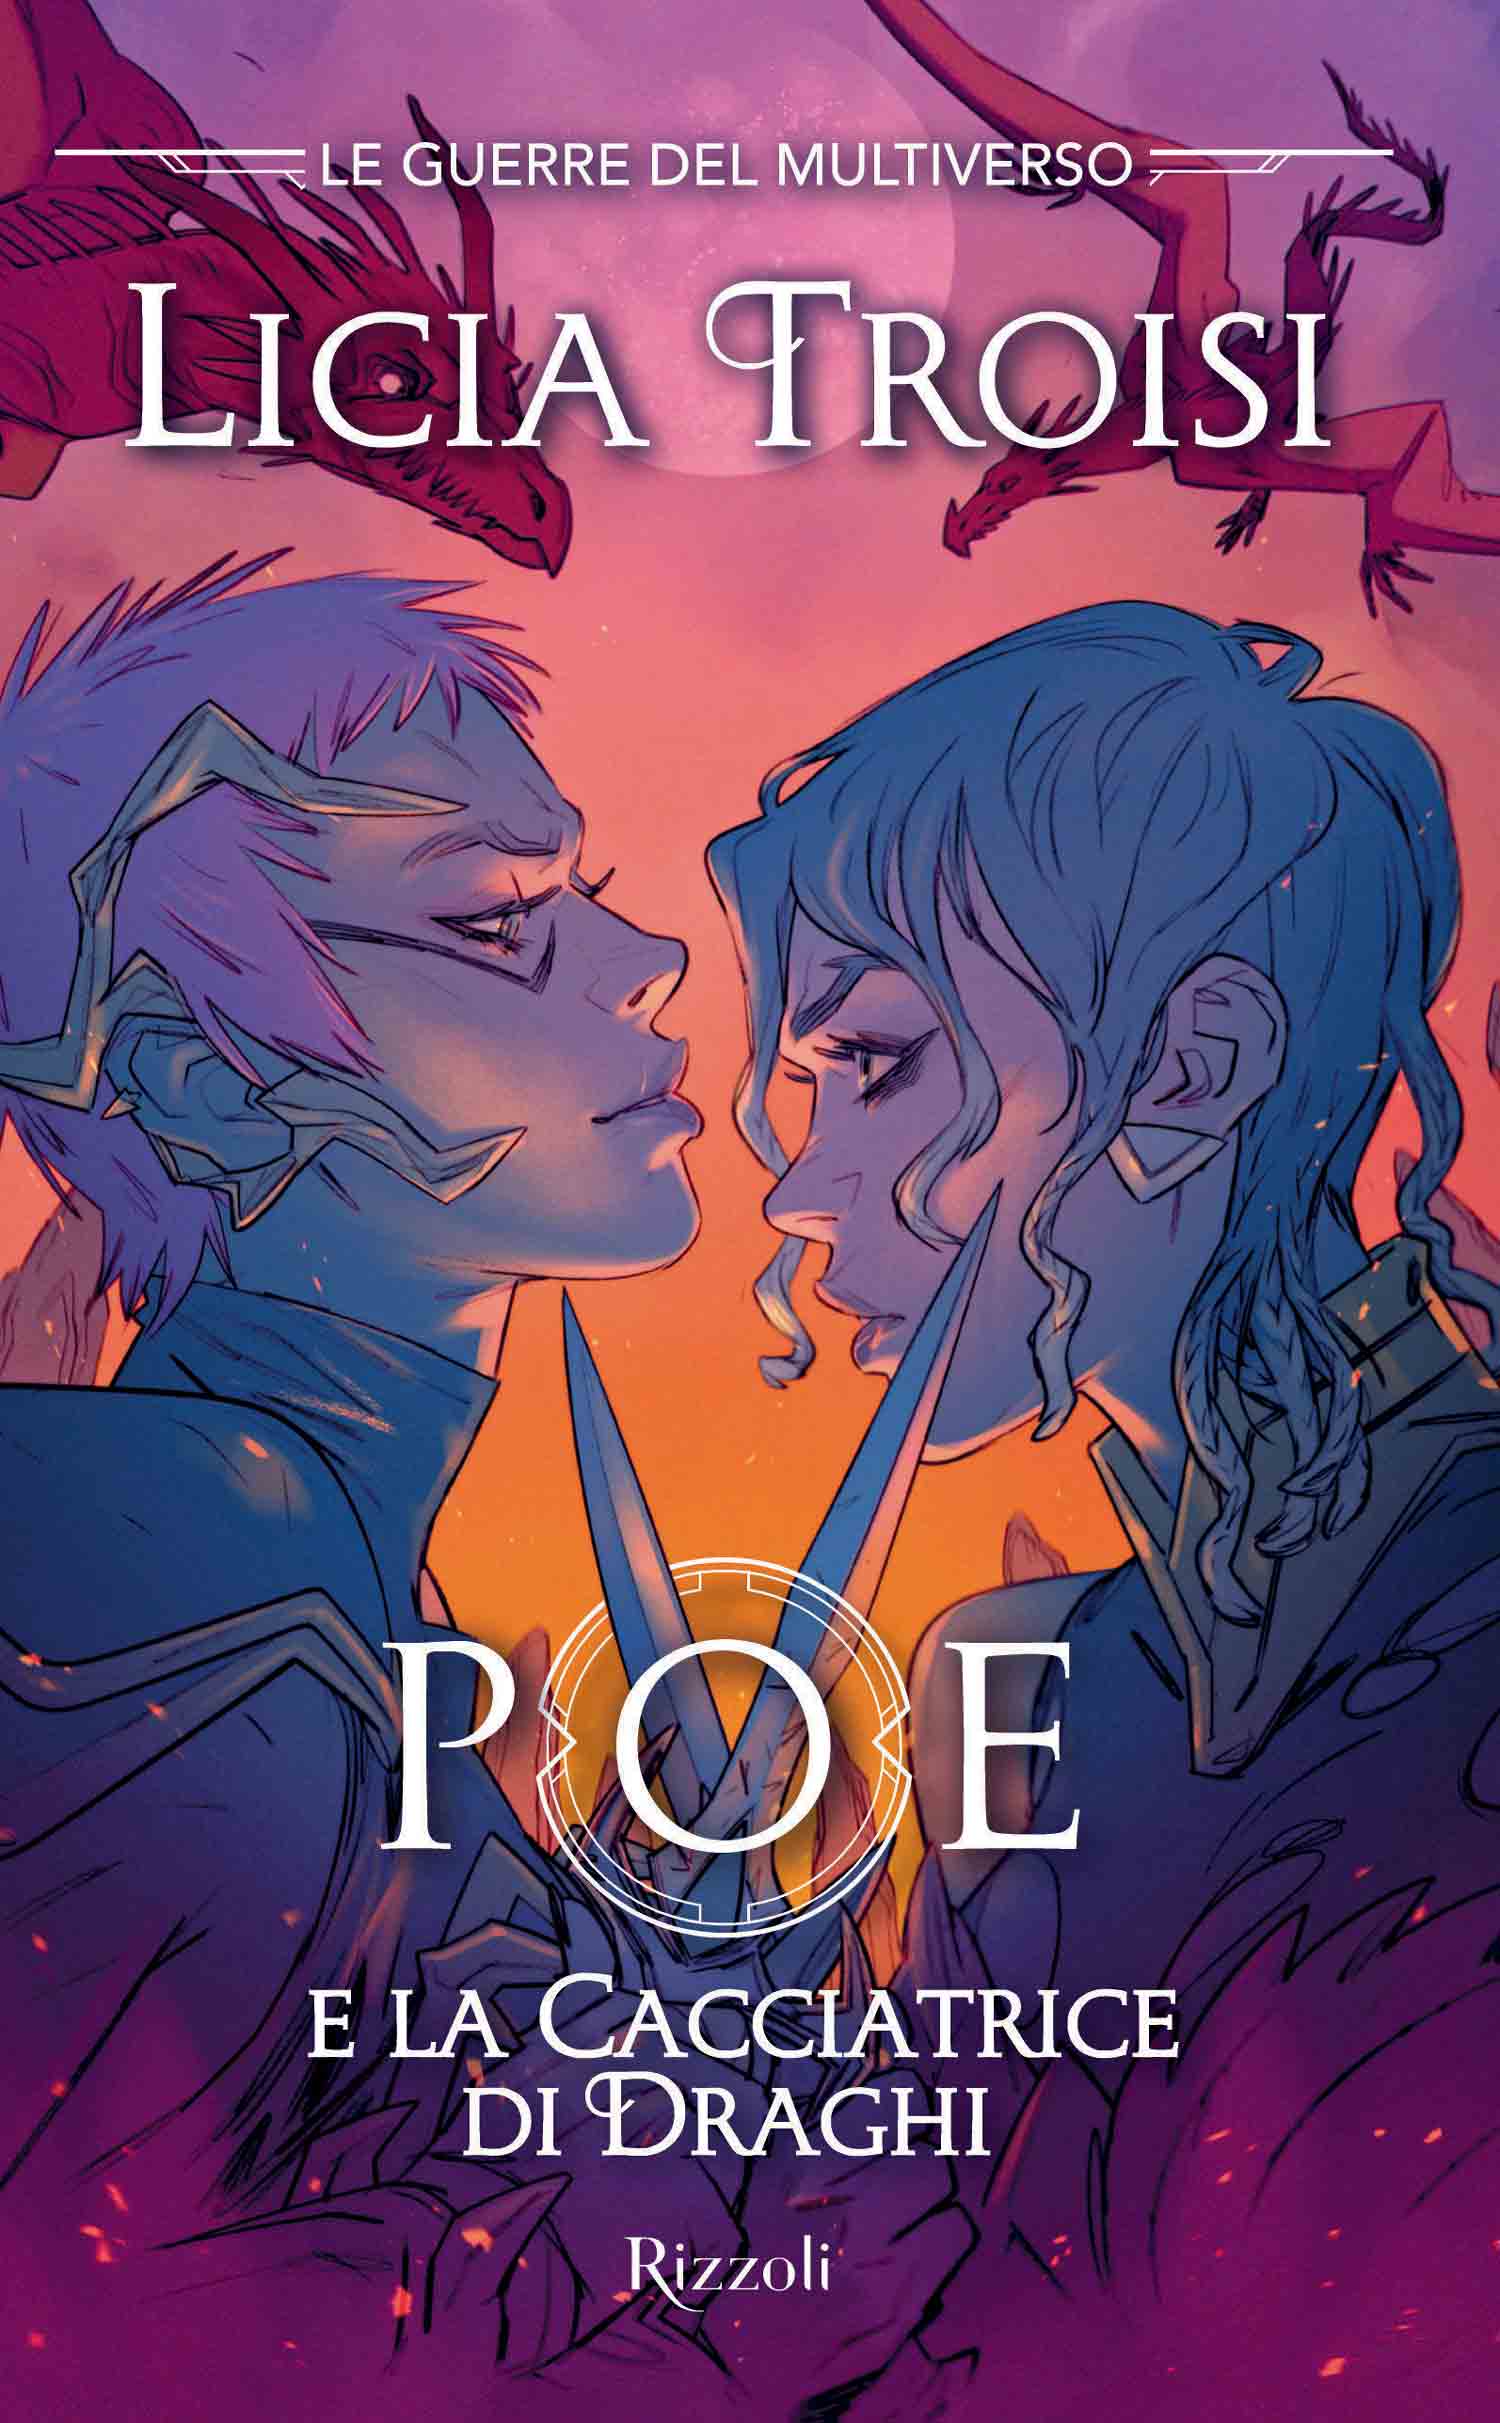 Copertina del libro Poe e la cacciatrice di draghi